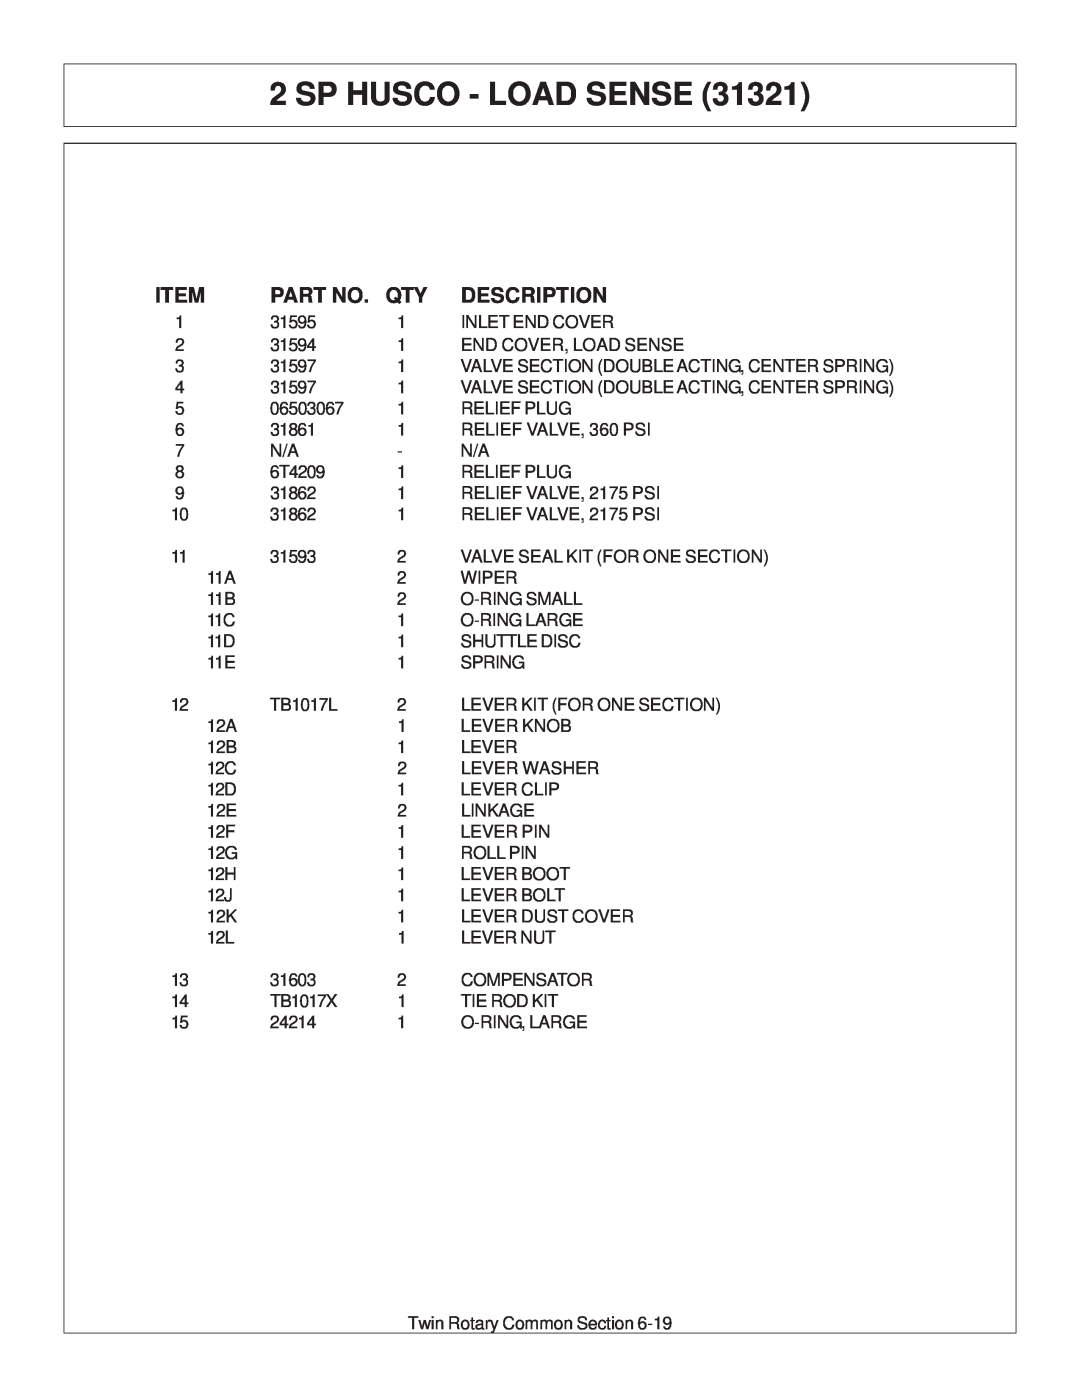 Tiger Products Co., Ltd JD 72-7520 manual Sp Husco - Load Sense, Description 